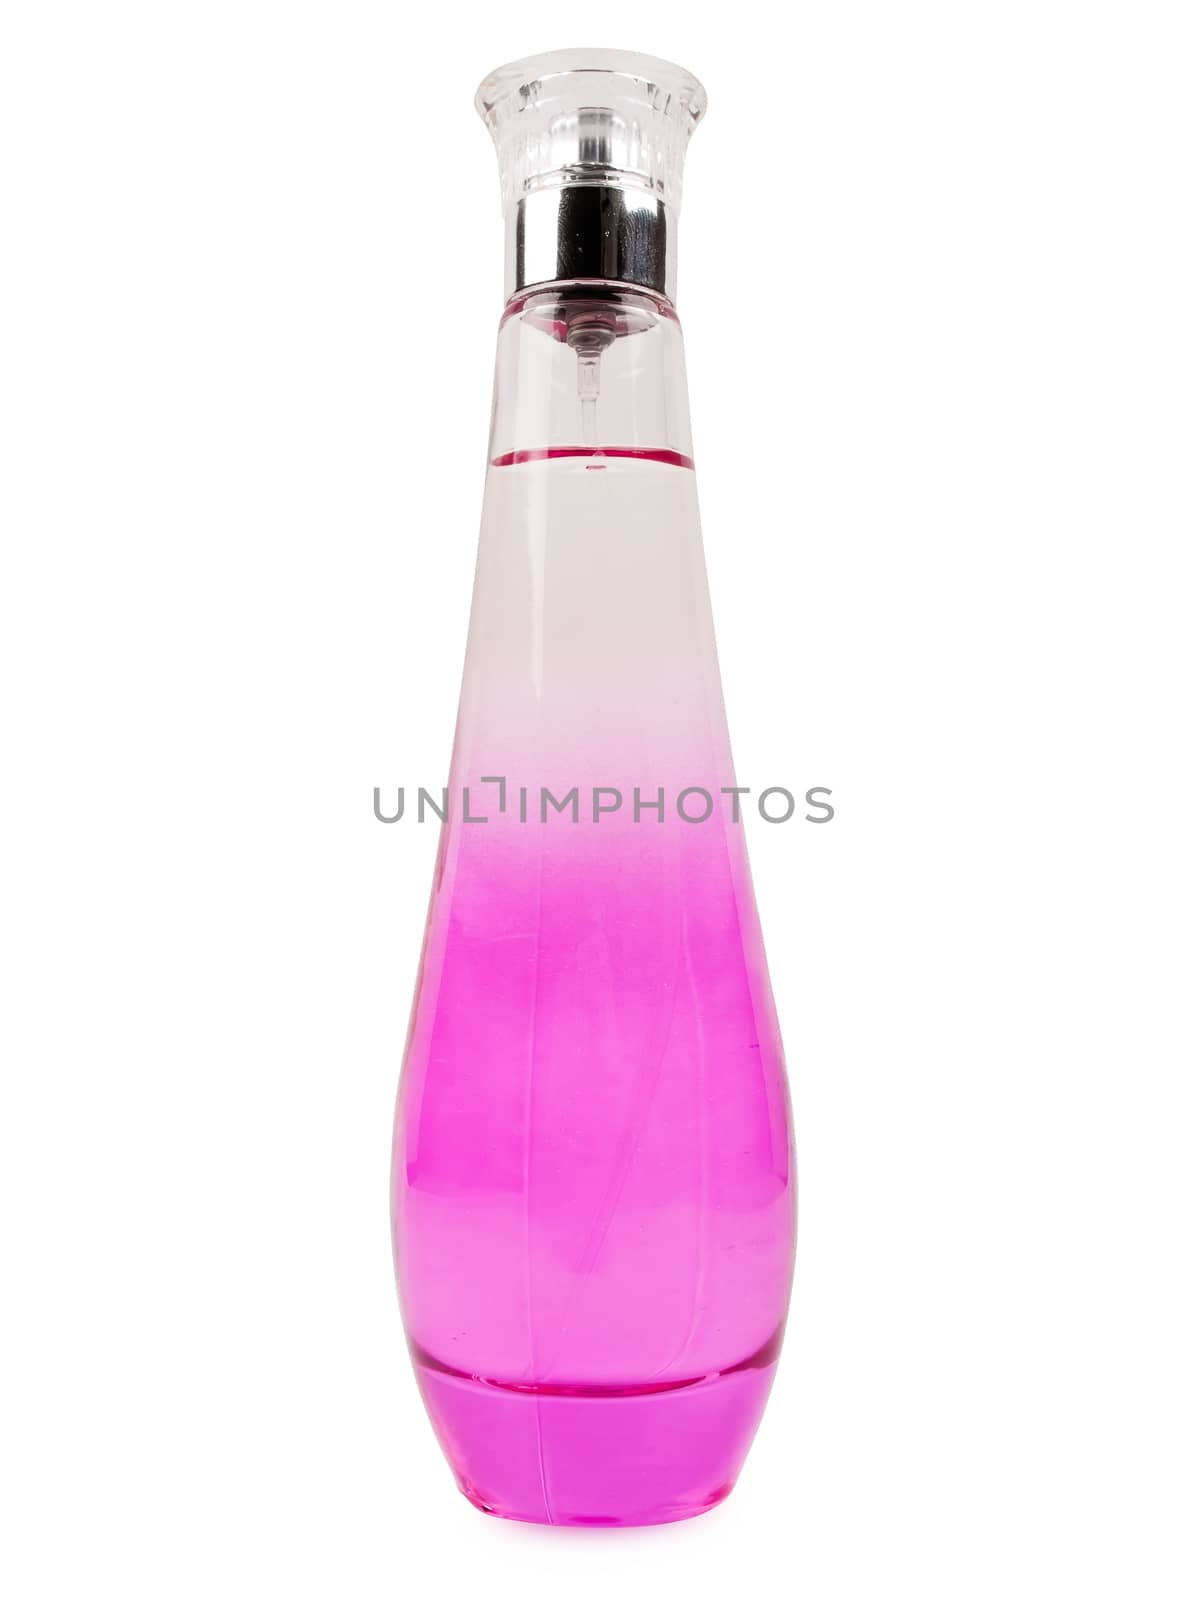 pink perfume bottle isolated on white background